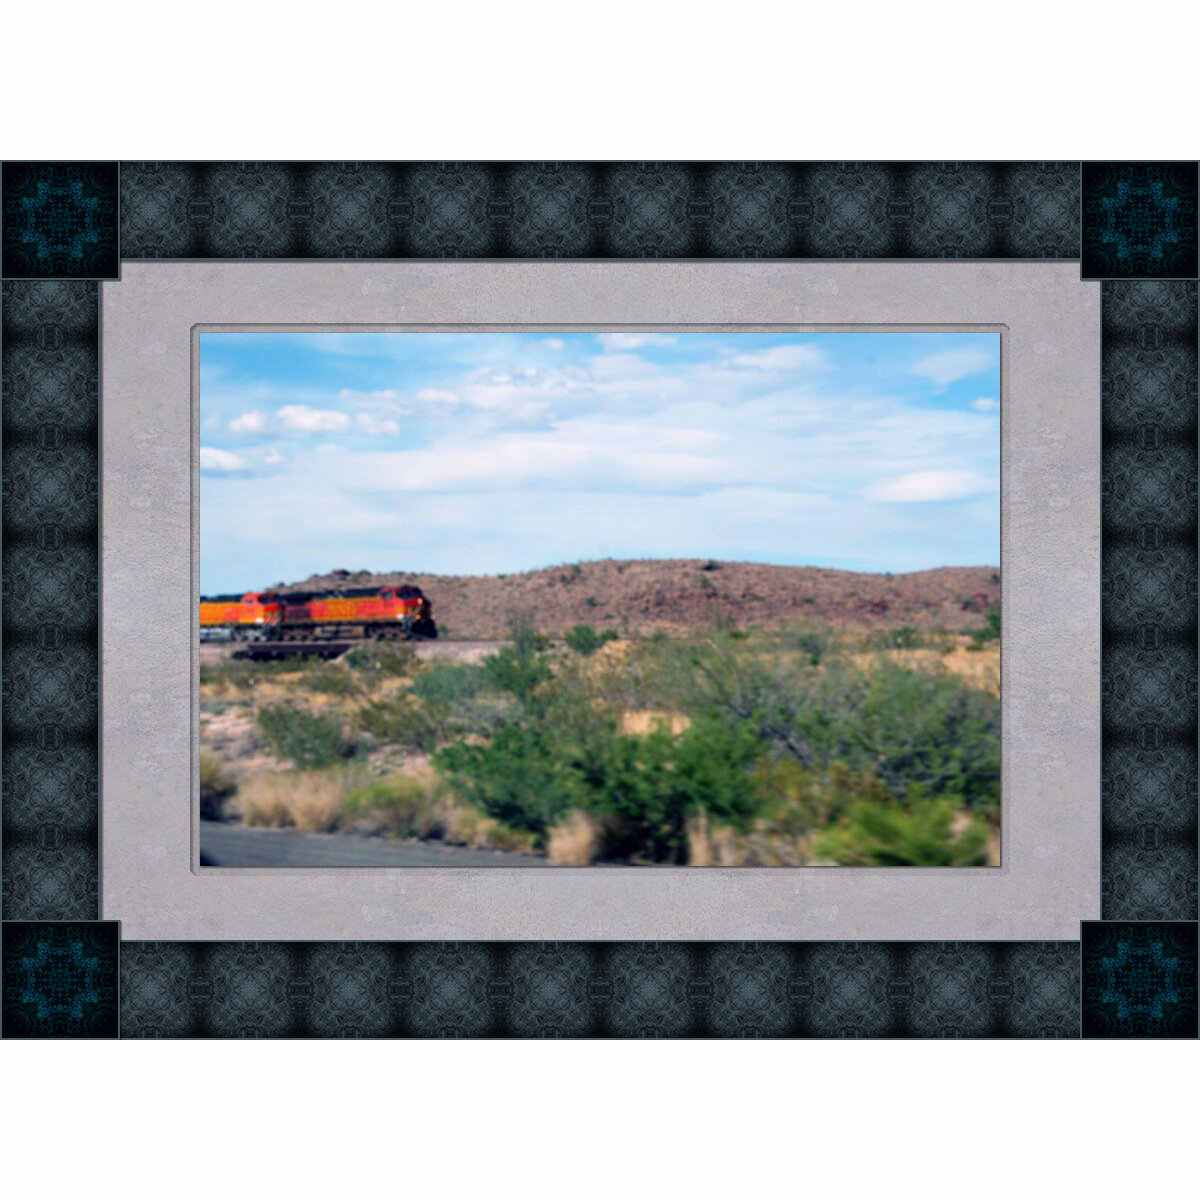 train-framed-ig.jpg